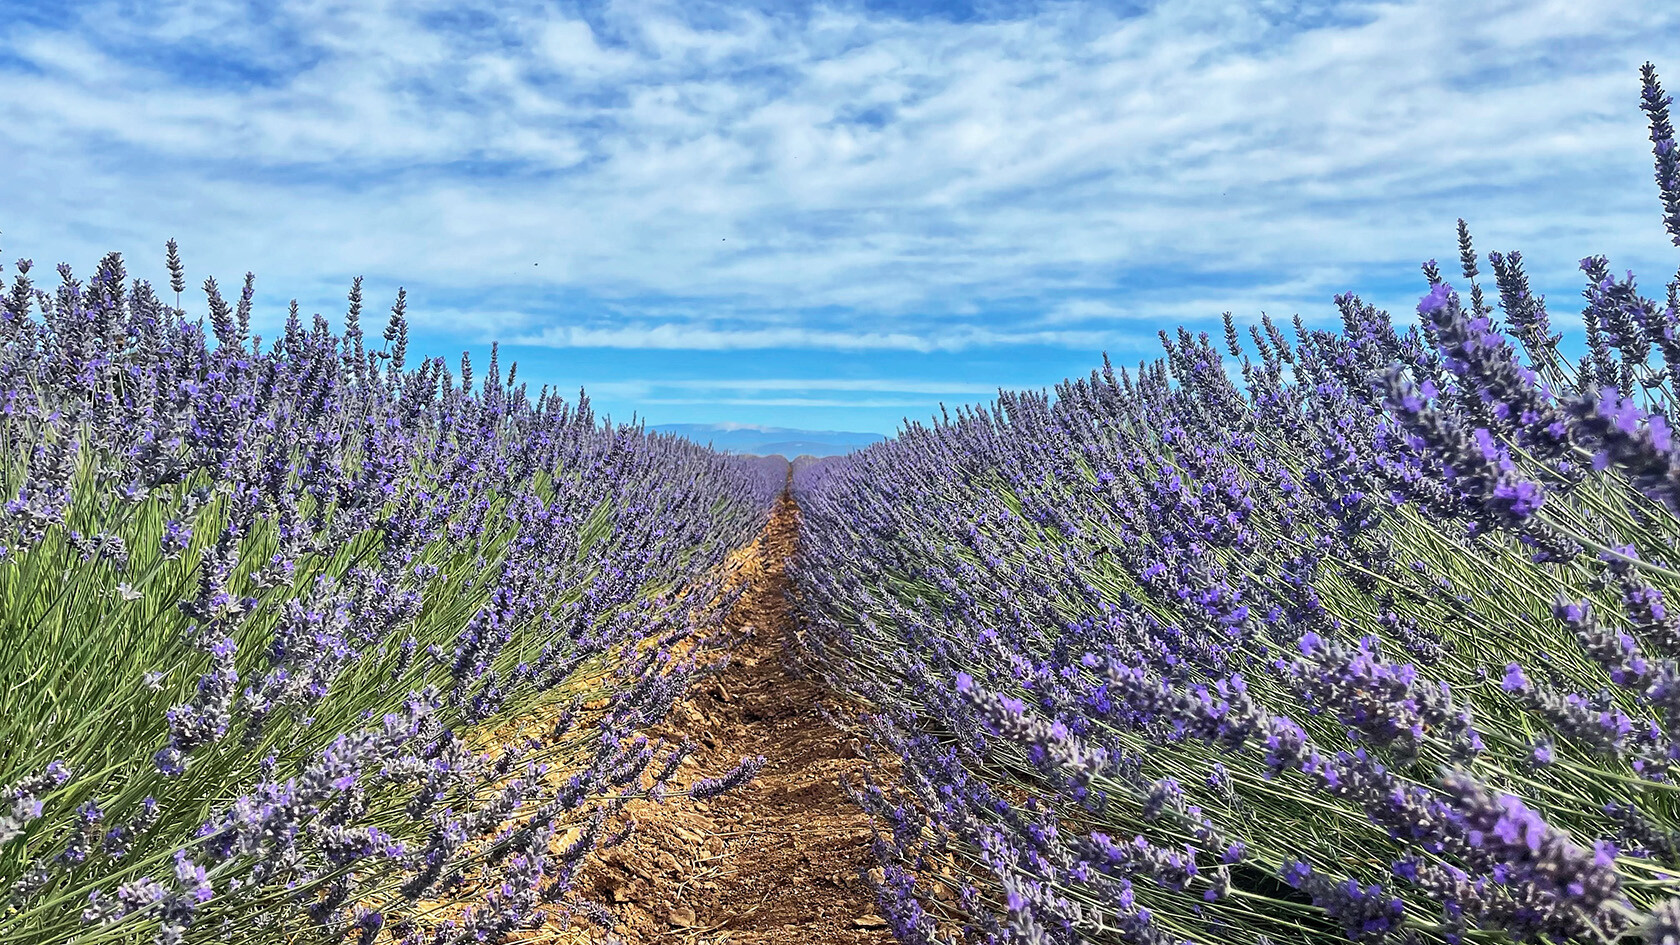 Provence Lavender June Tour